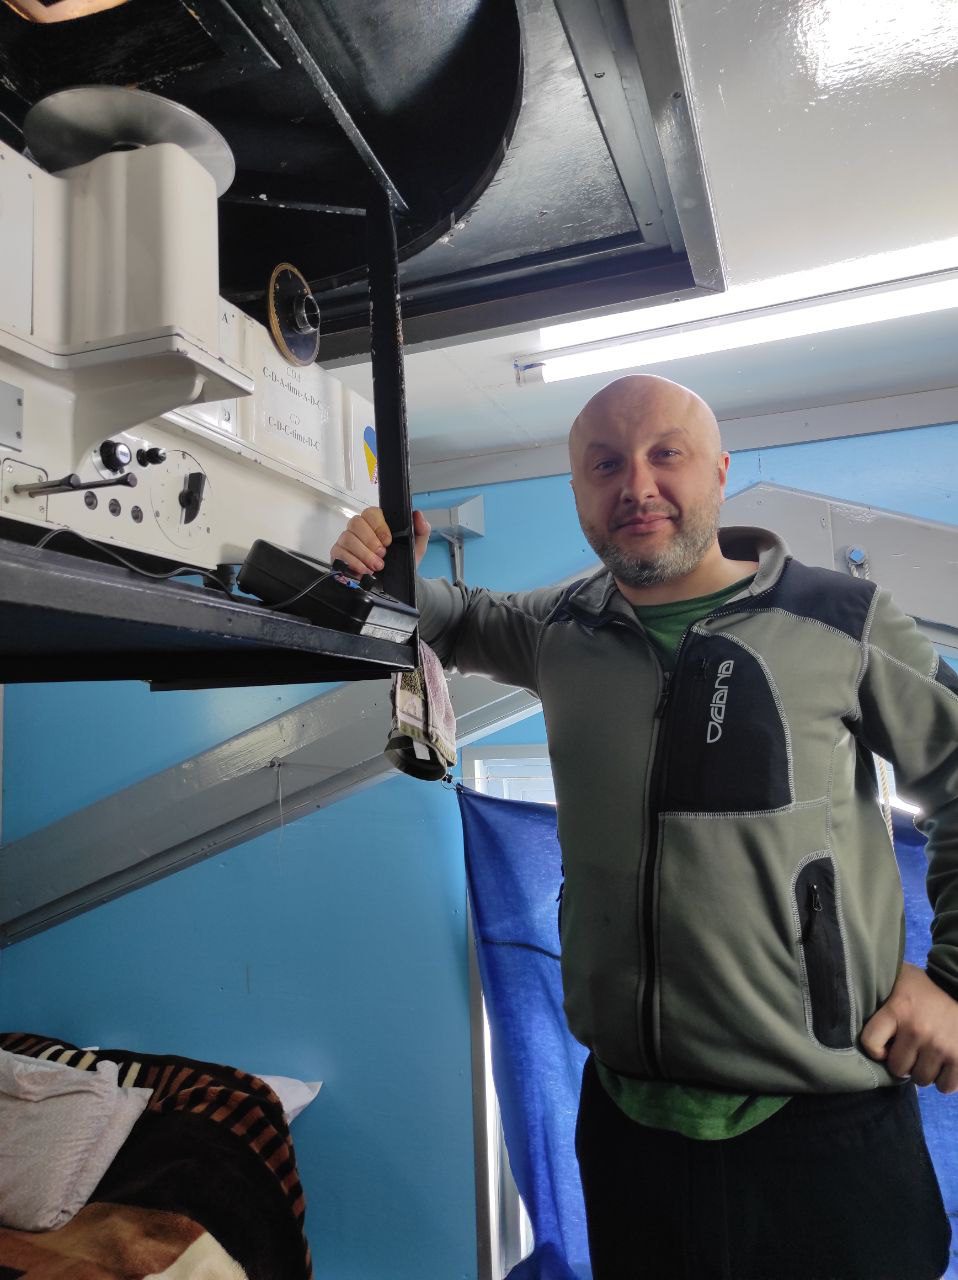 метеоролог Олександр Полудень на станції «Академік Вернадський» в Антарктиді біля апарату, що досліджує озонову діру


